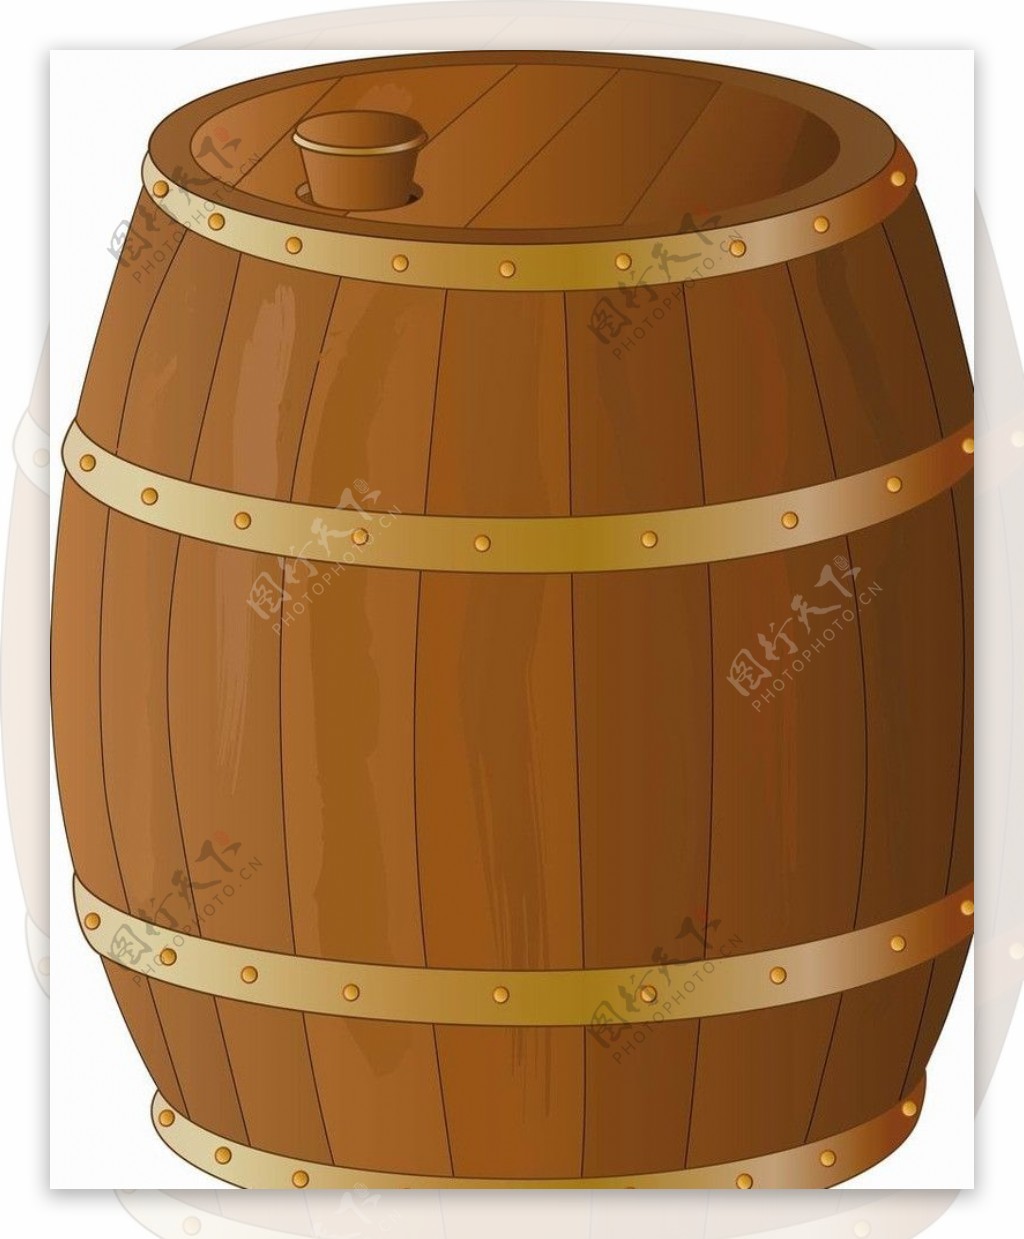 酒桶木桶图片